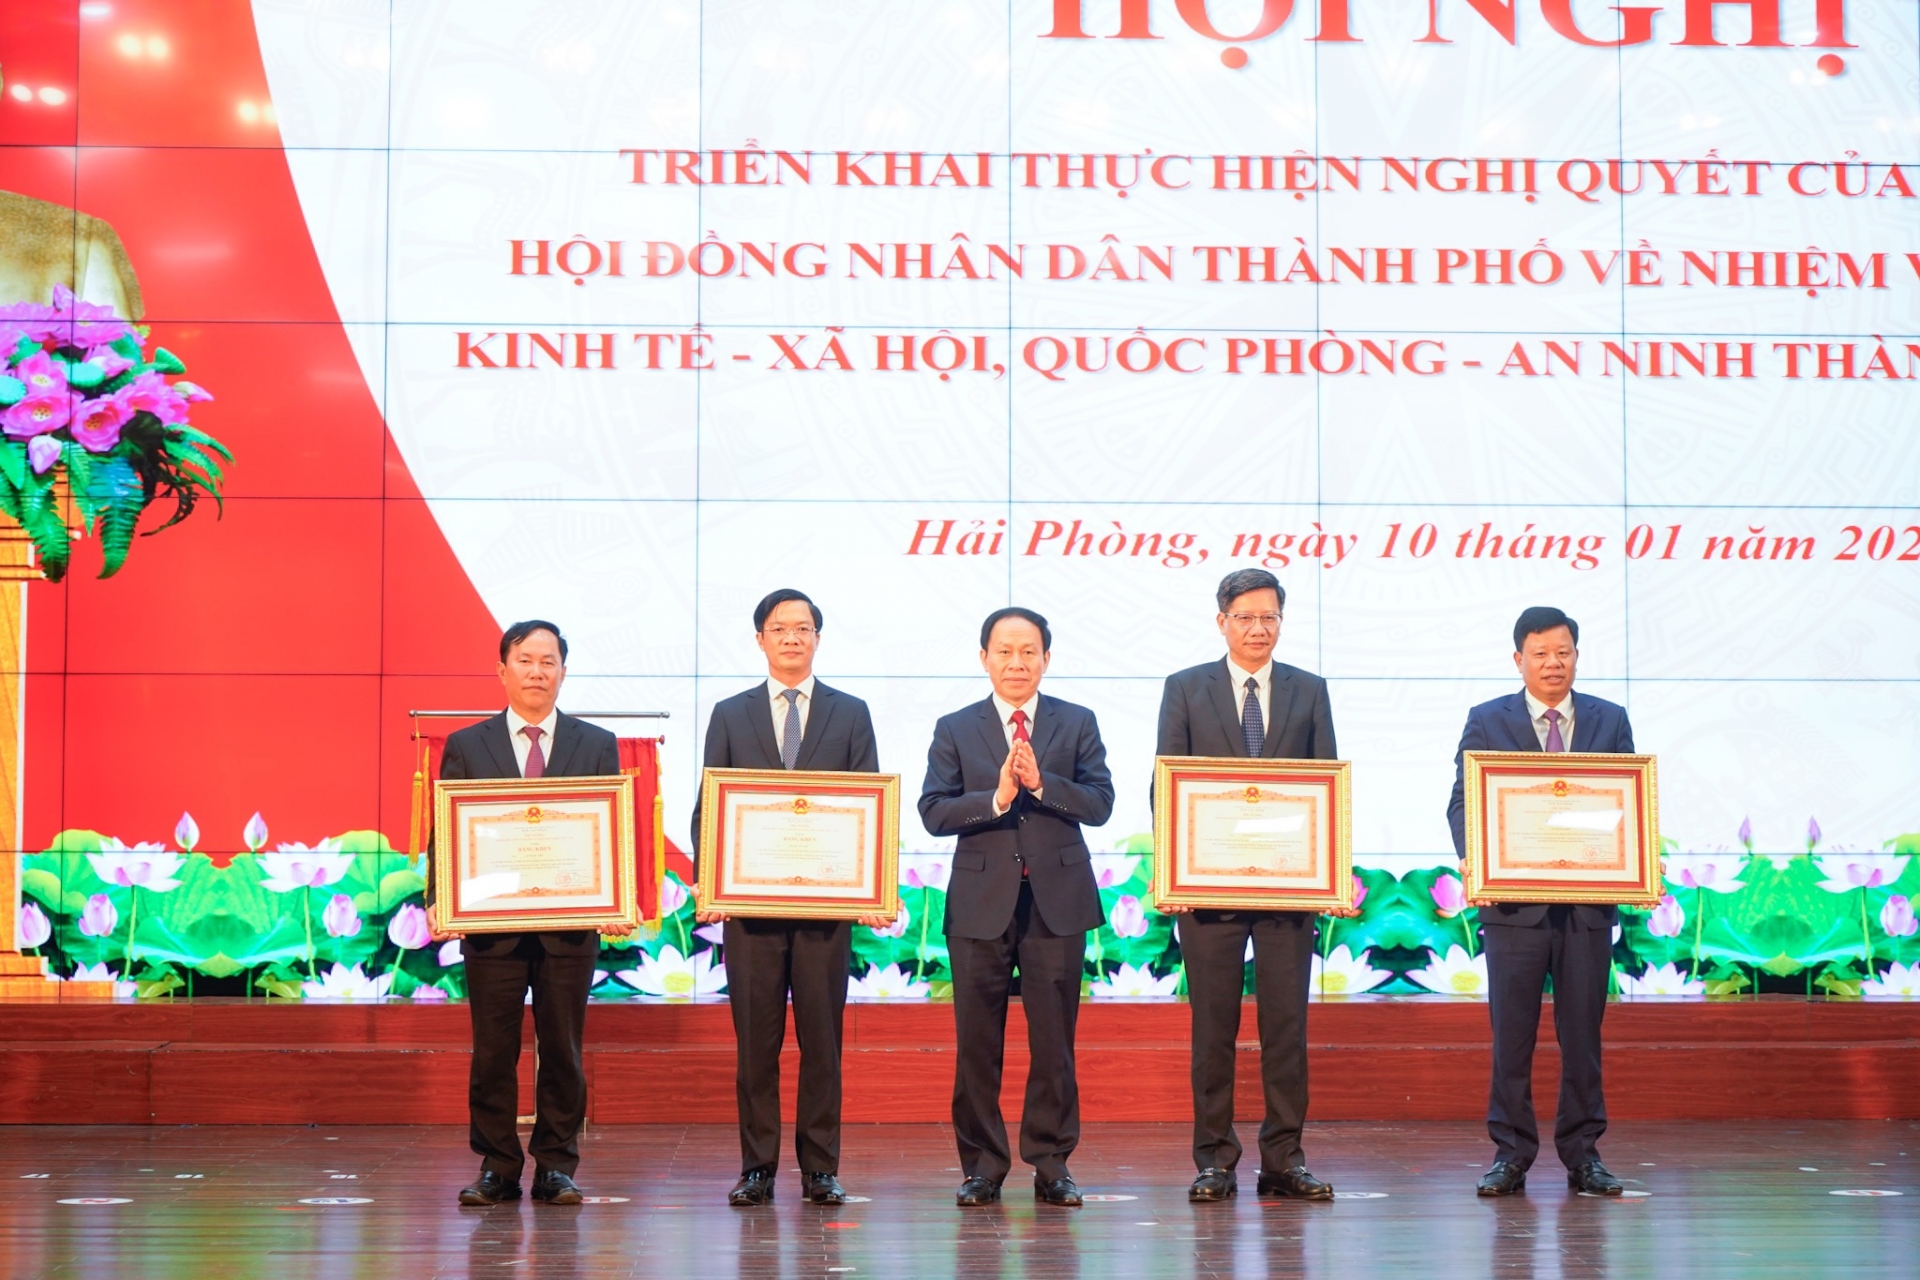 Phó Chủ tịch nước Võ Thị Ánh Xuân trao Cờ Thi đua của Chính phủ tặng thành phố Hải Phòng